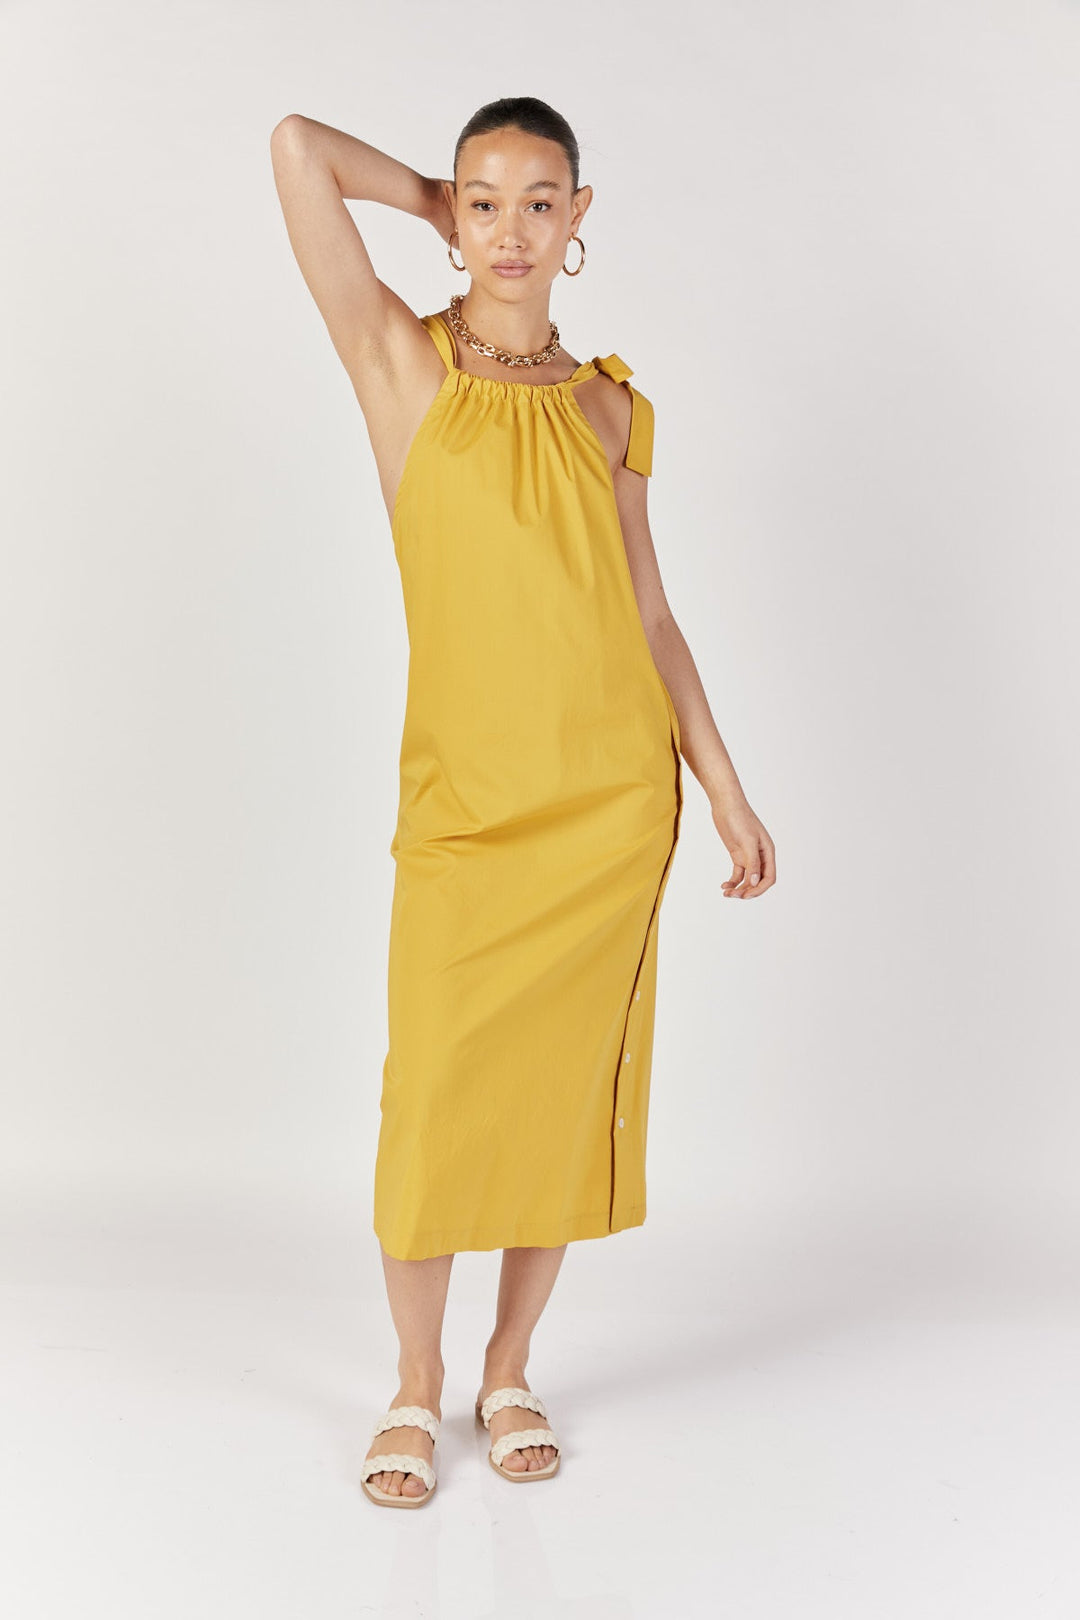 שמלת מידי קאווה בצבע חרדל - Razili Studio